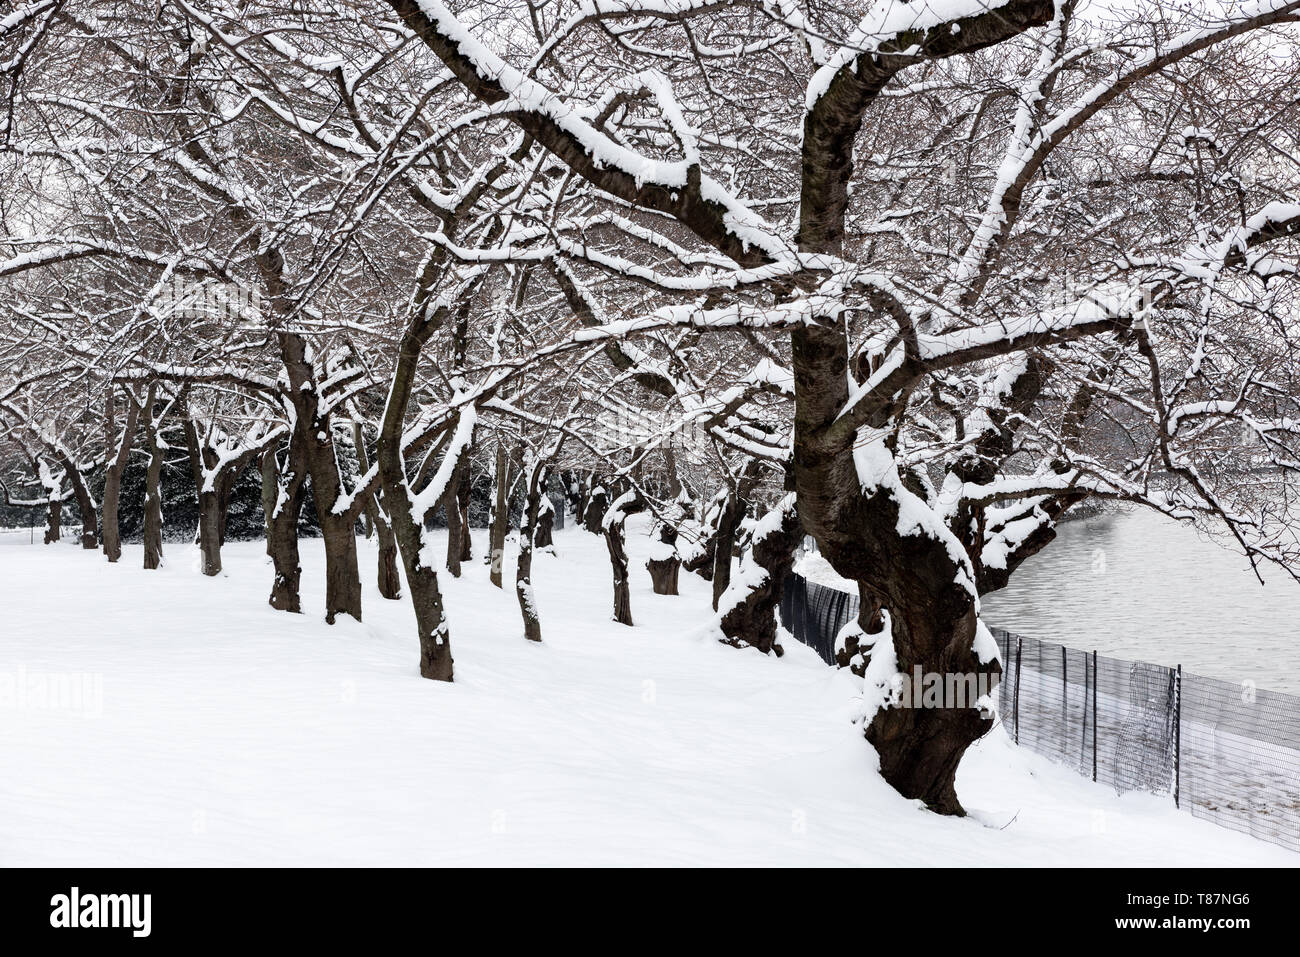 WASHINGTON DC - une couche de neige sur les célèbres cerisiers de Washington. Chaque printemps, la floraison des cerisiers en fleurs amène un grand nombre de touristes à Washington DC. Banque D'Images